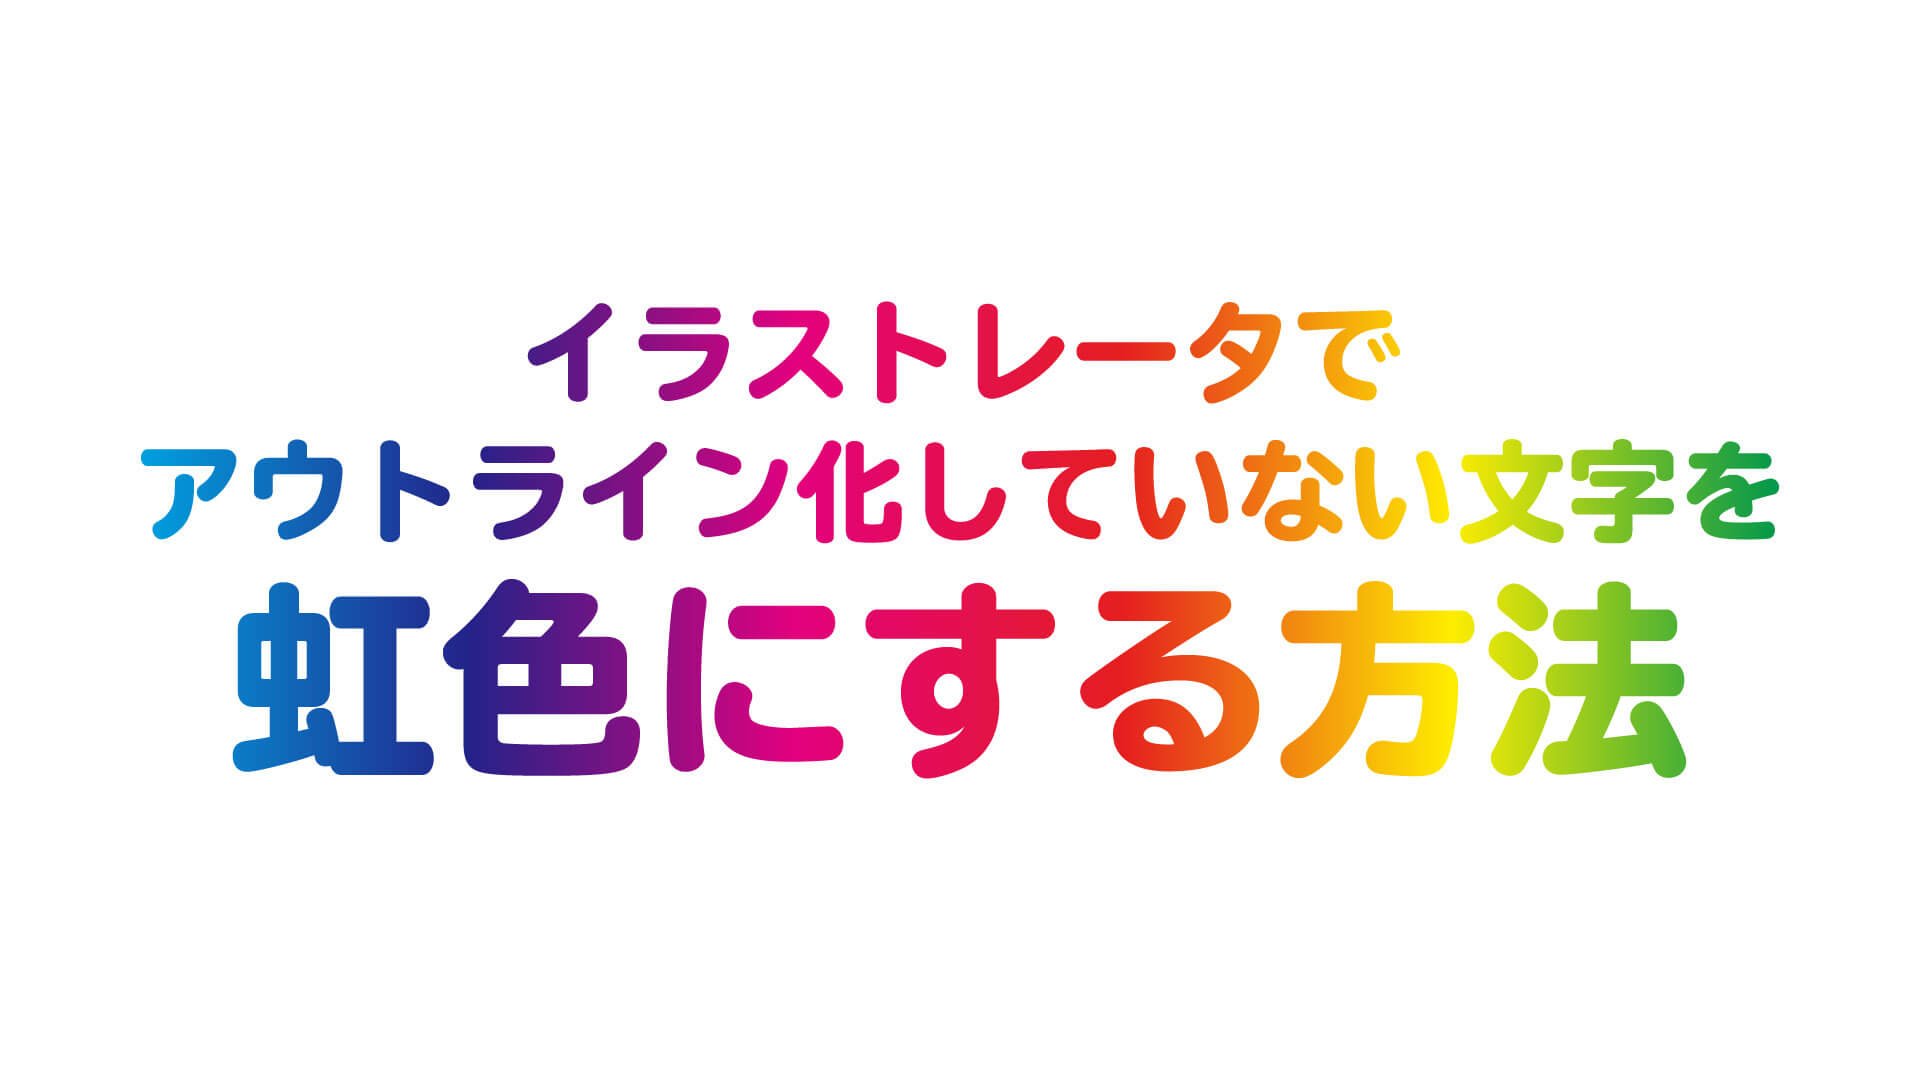 Illustratorでアウトライン化していない文字を虹色にする方法 Webマガジン 株式会社296 川崎のホームページ制作会社